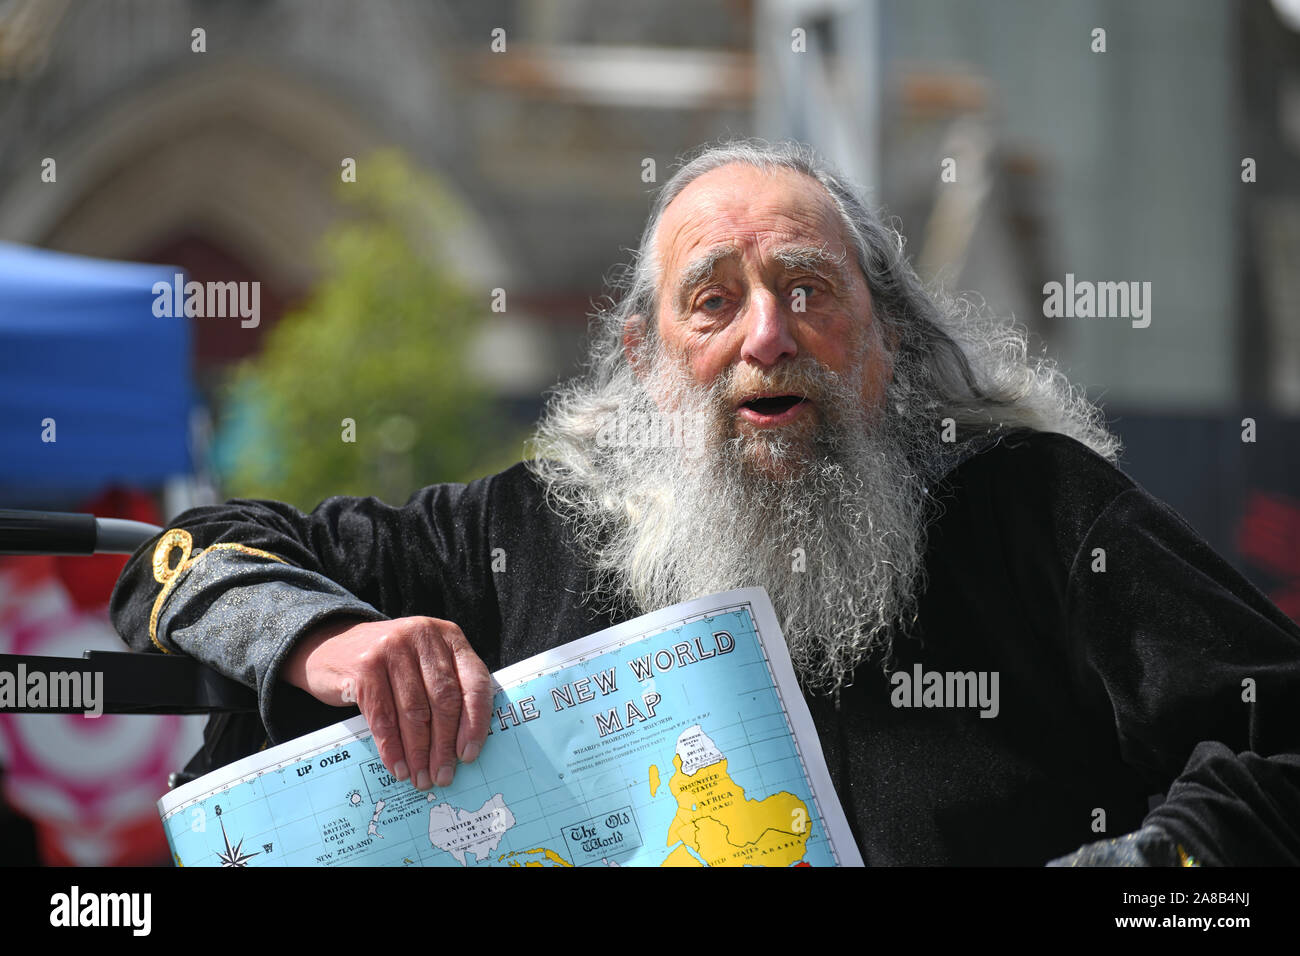 CHRISTCHURCH, NEUSEELAND, 12. Oktober 2019: Der Zauberer von Christchurch am Cathedral Square spricht mit einer Masse von Touristen und Zuschauer. Stockfoto